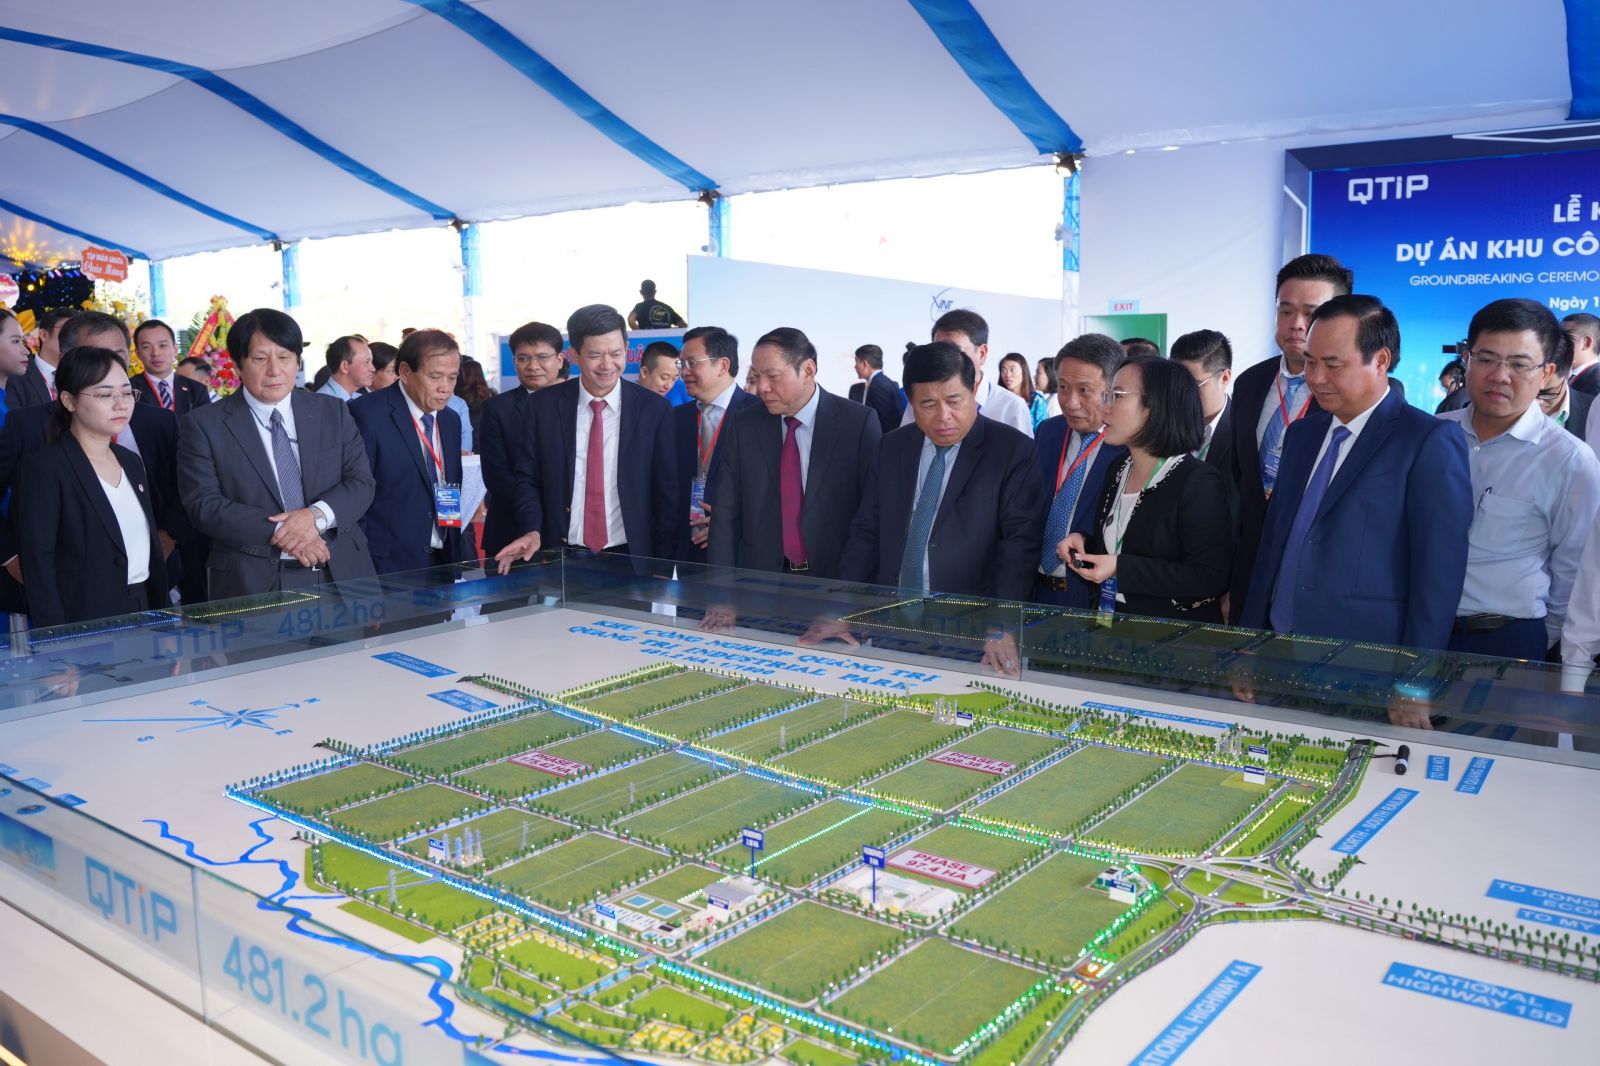 Dự án Khu công nghiệp Quảng Trị là dự án trọng điểm của tỉnh, có ý nghĩa rất quan trọng trong việc thu hút đầu tư, phát huy tiềm năng, thế mạnh của Quảng Trị